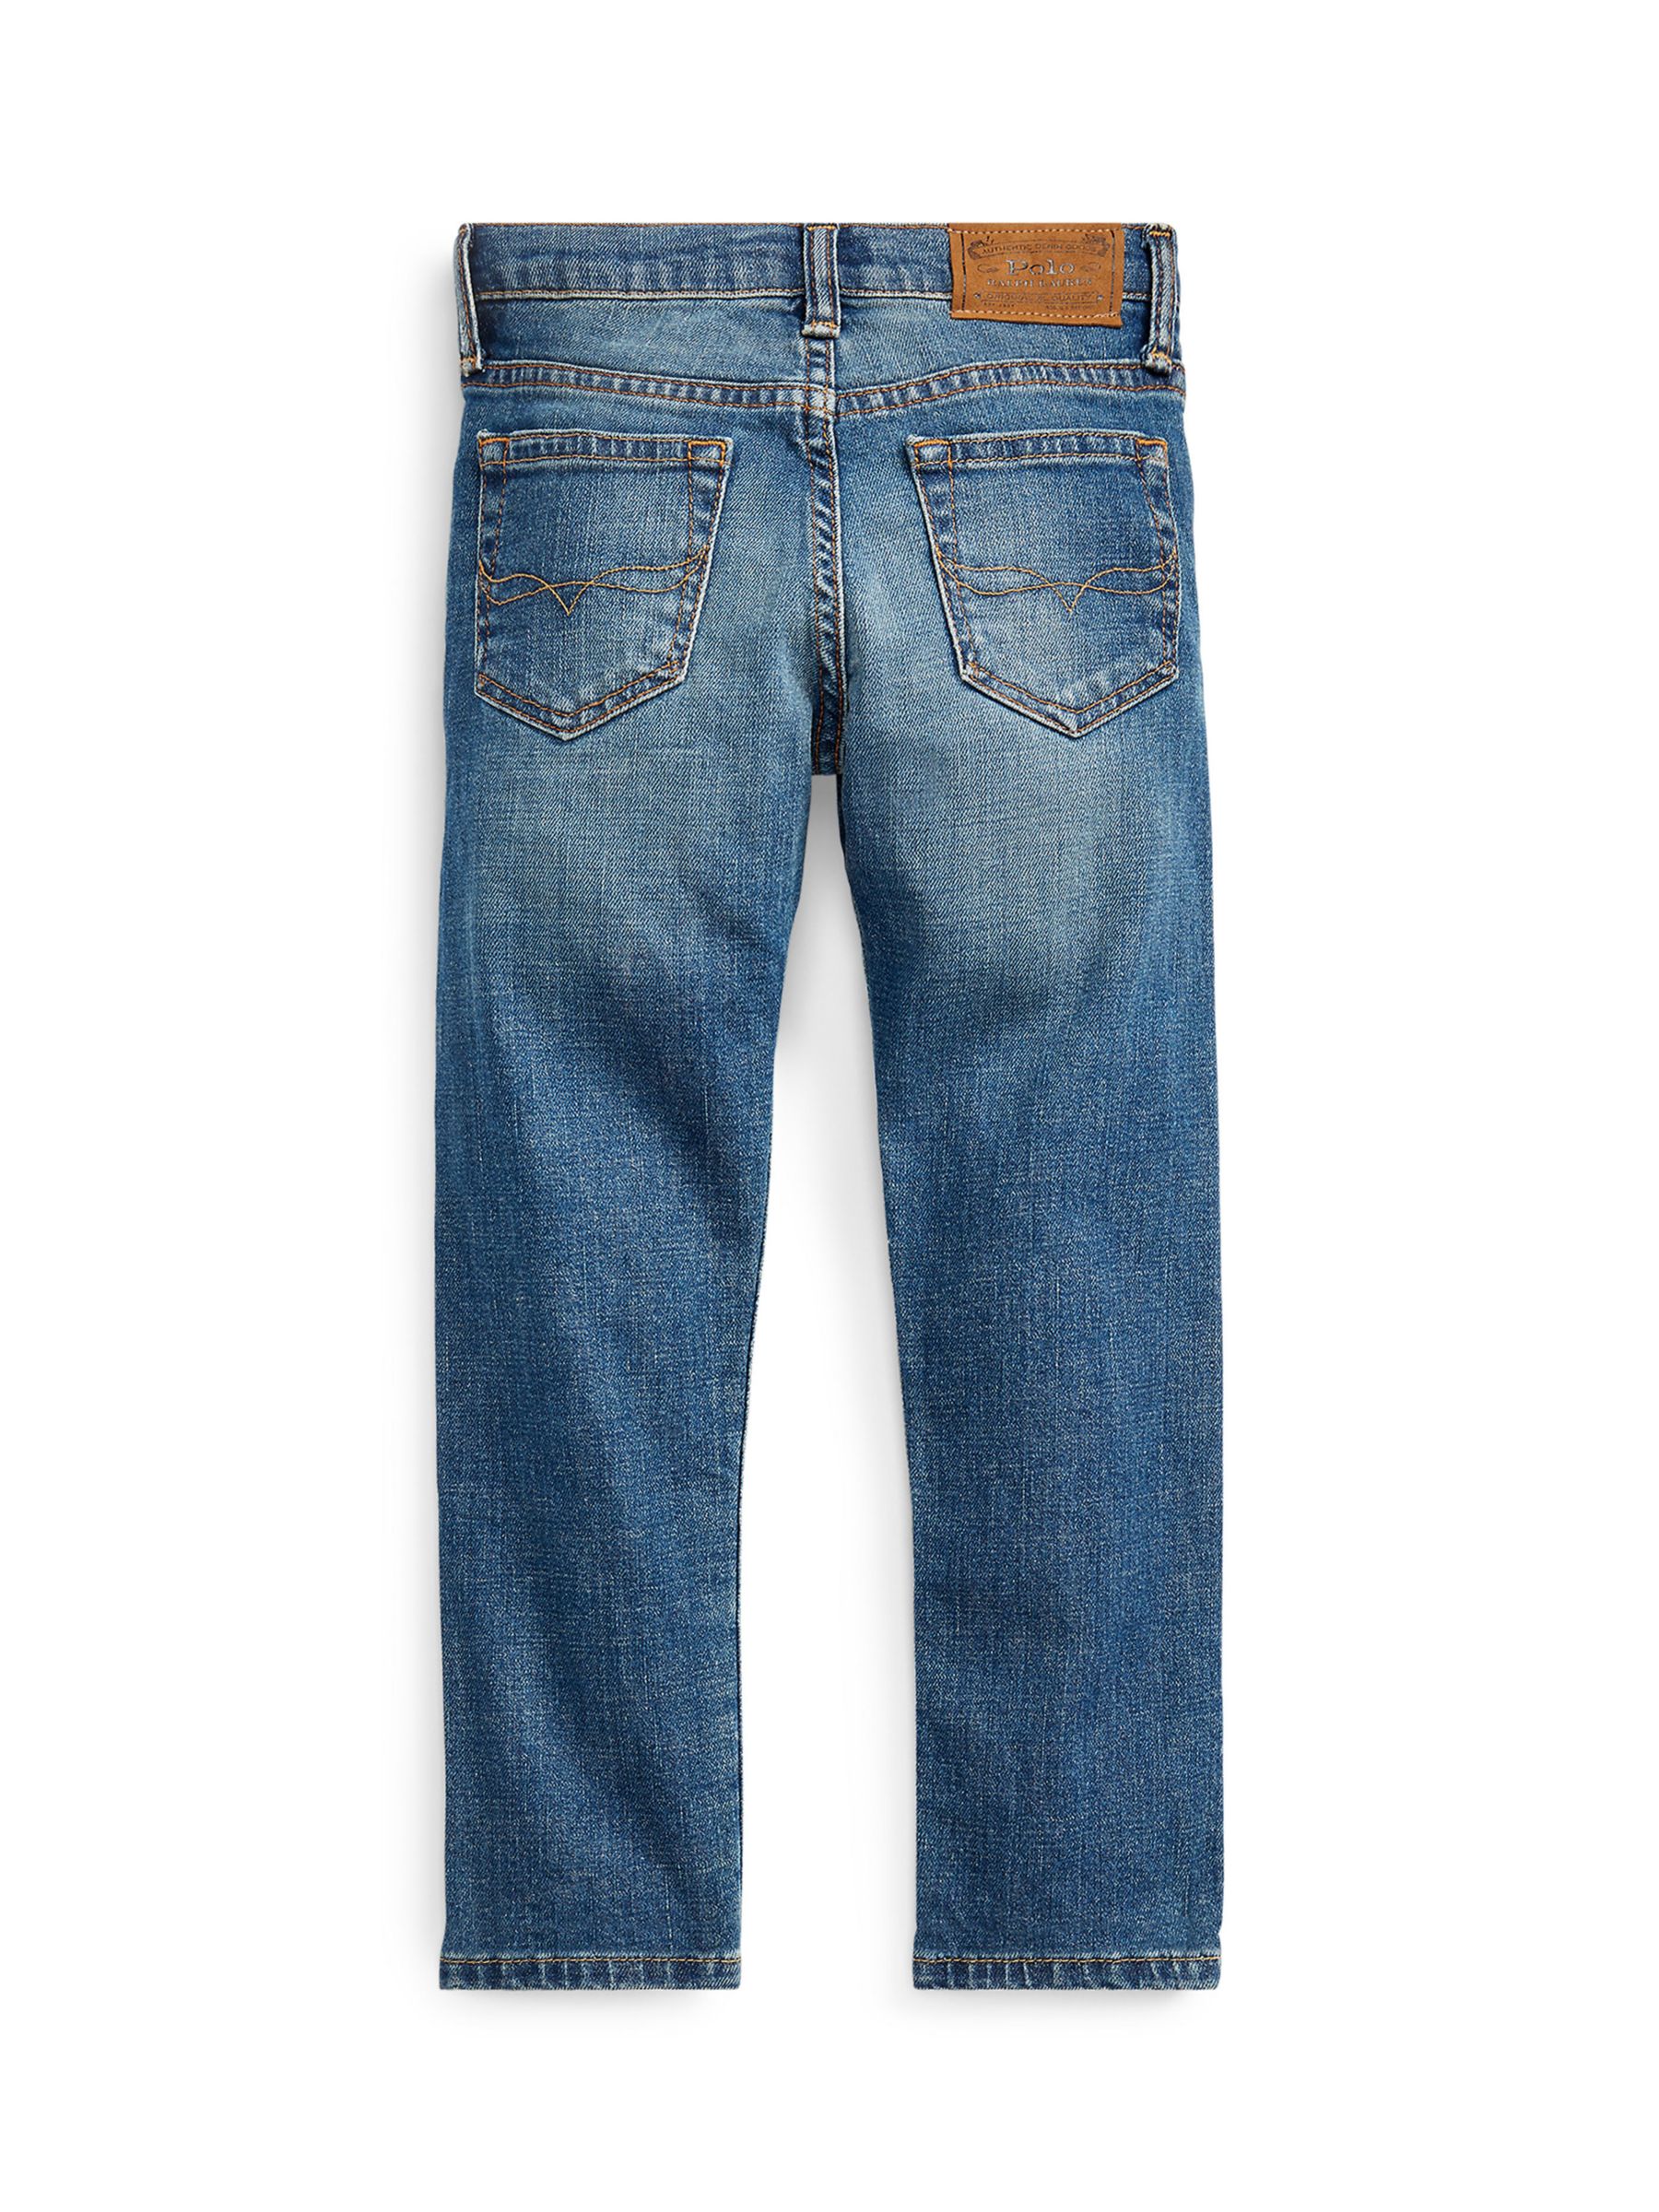 Buy Ralph Lauren Kids' Sullivan Jeans, Woodhaven Wash Online at johnlewis.com